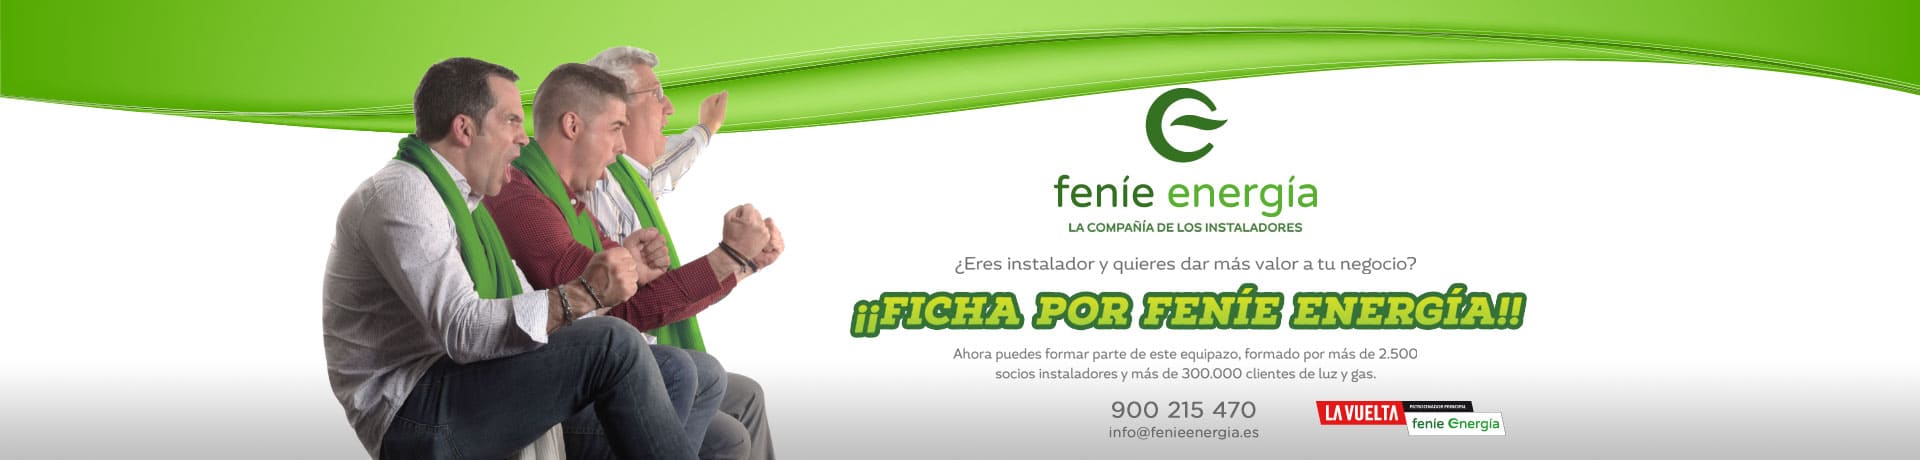 Ficha por Feníe Energía la compañía de los instaladores